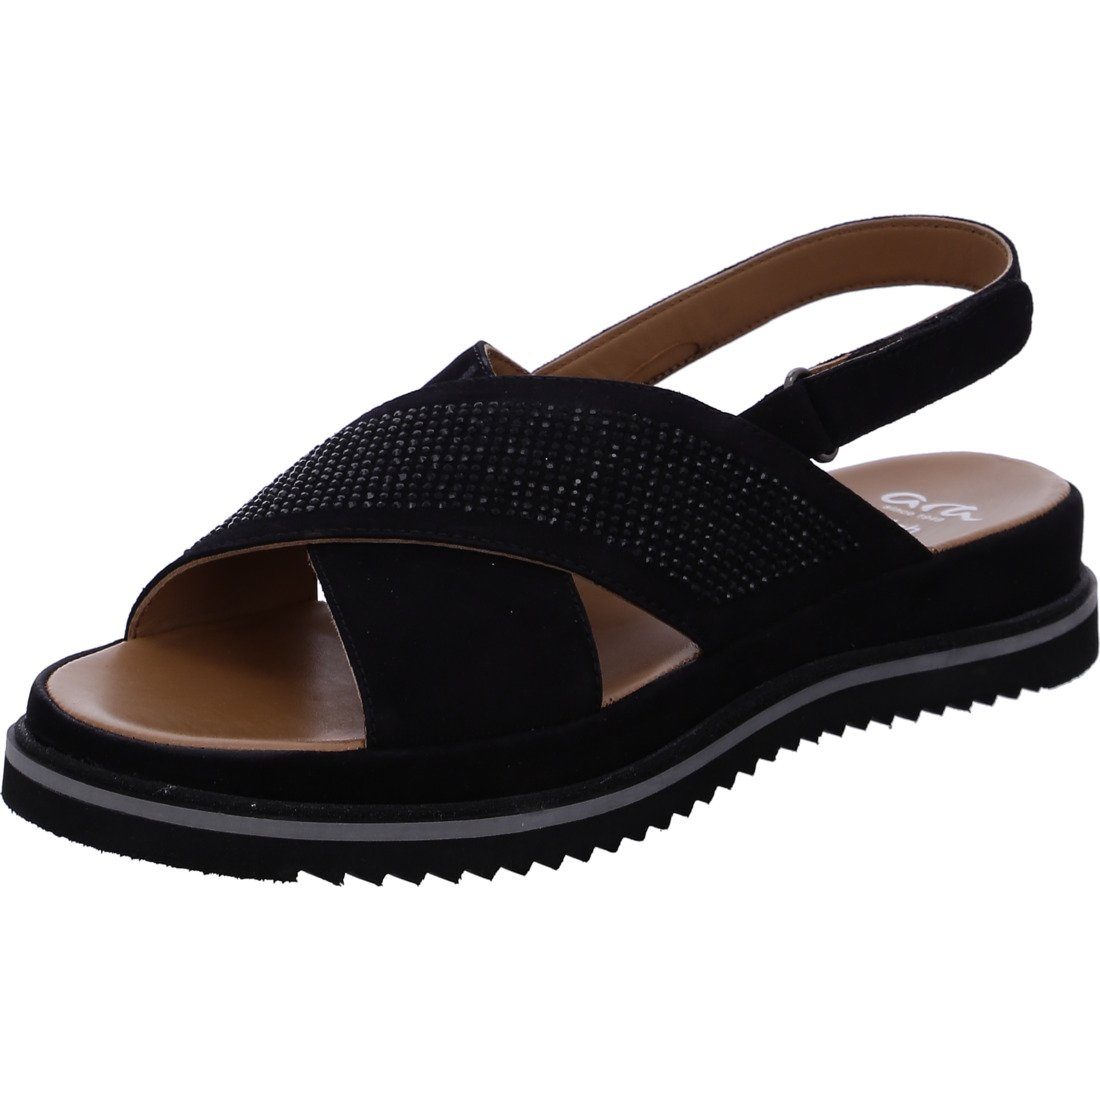 Dubai Ara Ara Sandalette schwarz Schuhe, 044853 Damen Sandalette - Rauleder